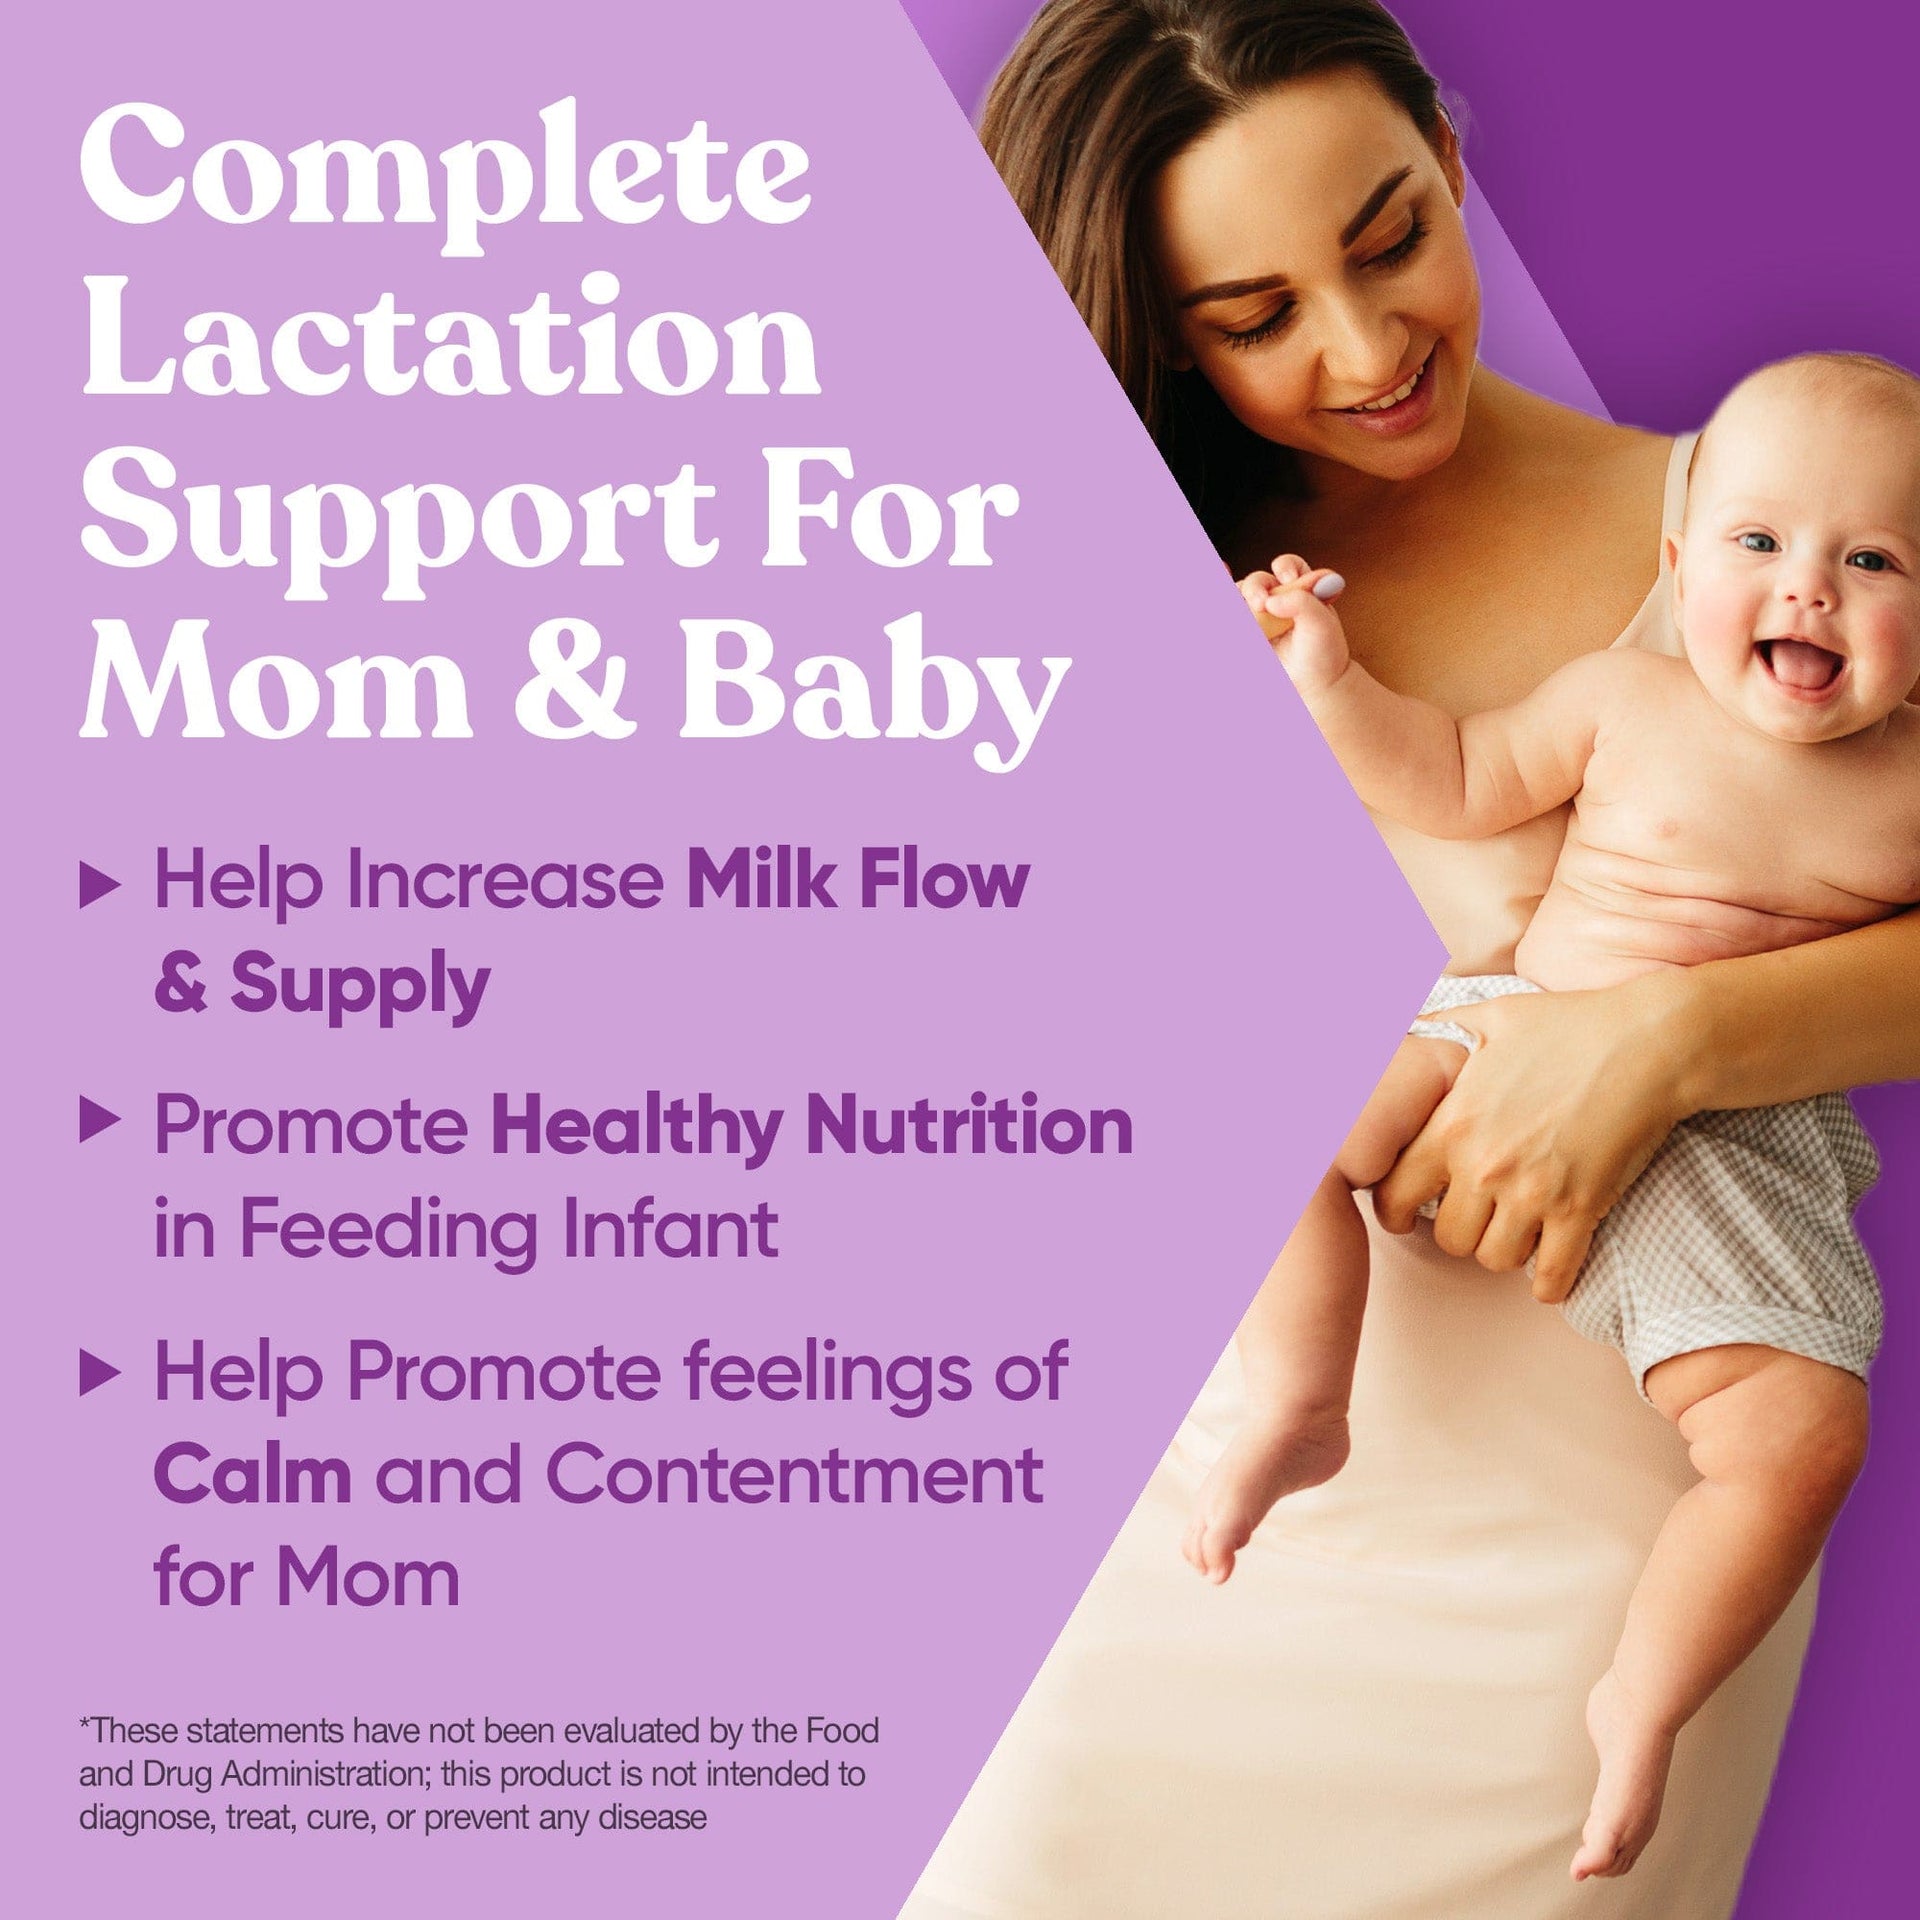 Eu Natural NOURISH Lactation Support Postnatal Vitamins